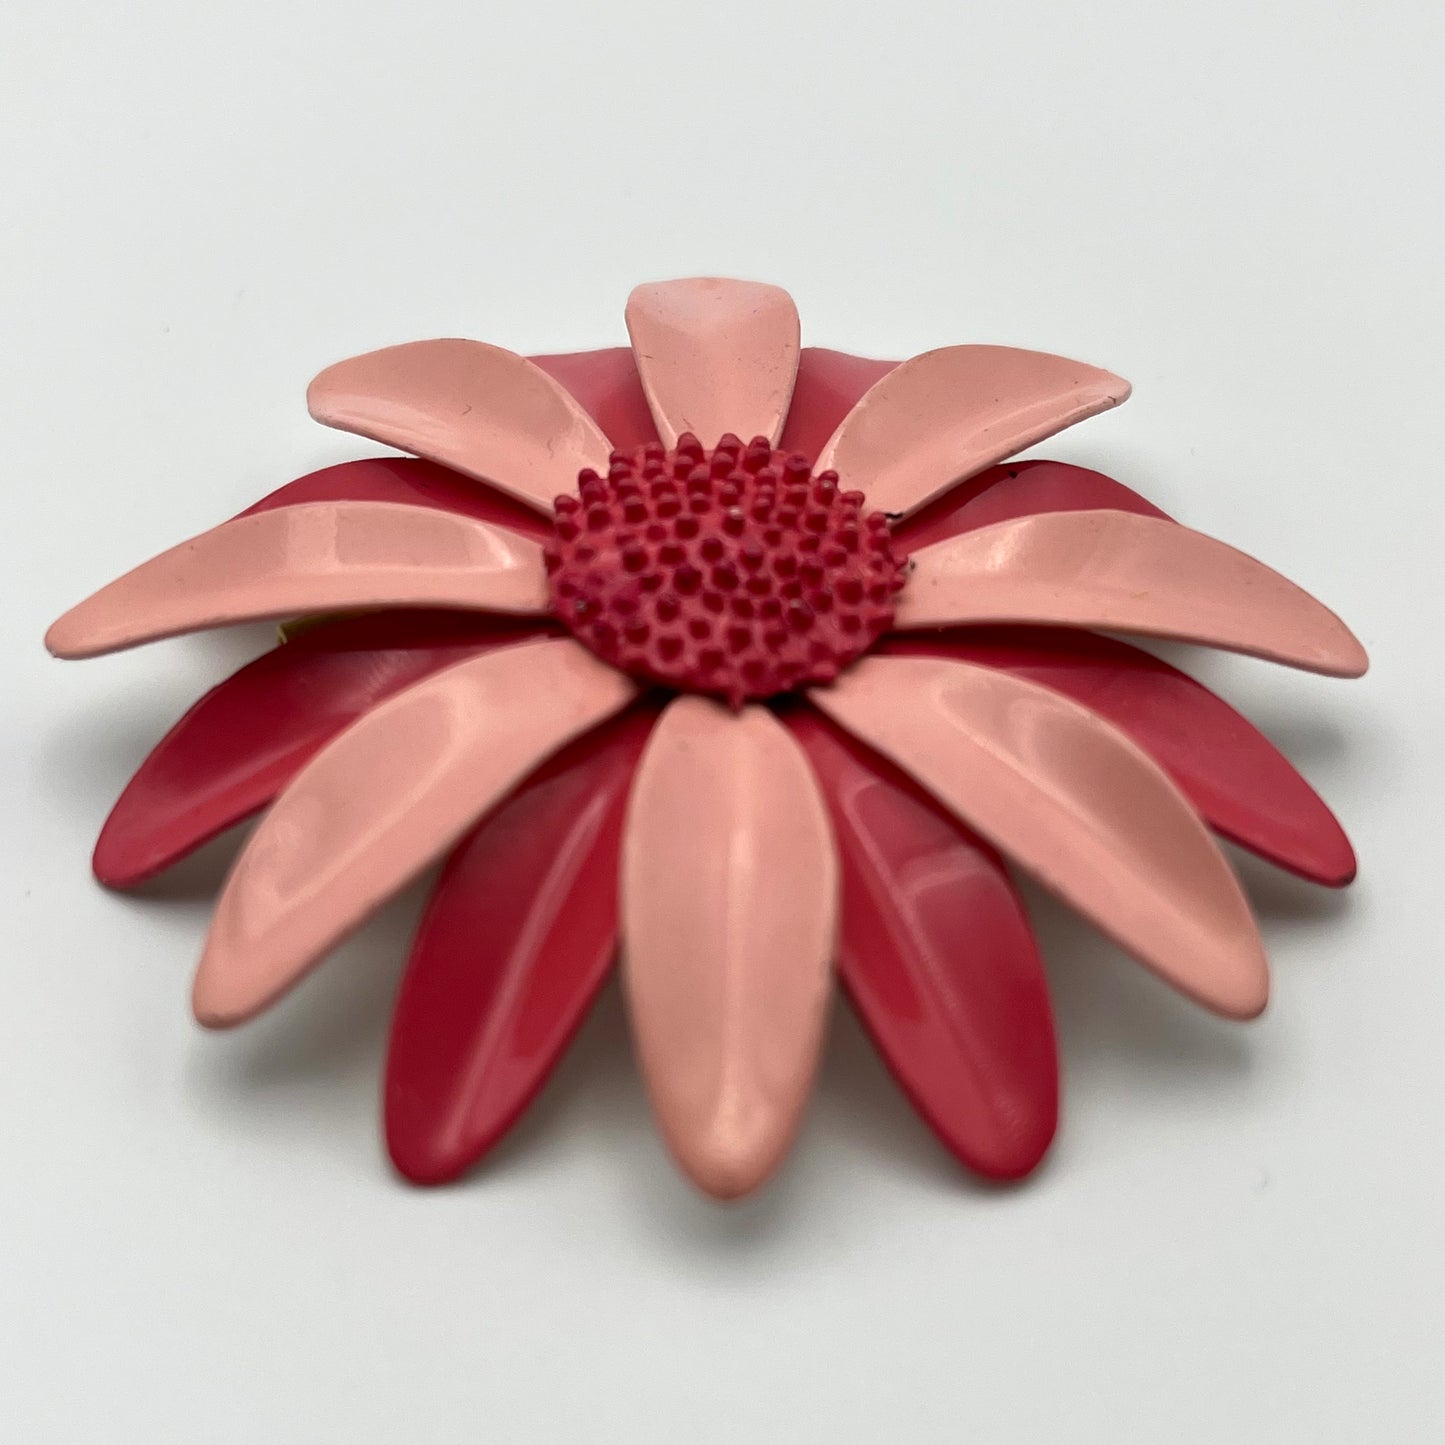 Late 60s/ Early 70s Pink Enamel Flower Brooch